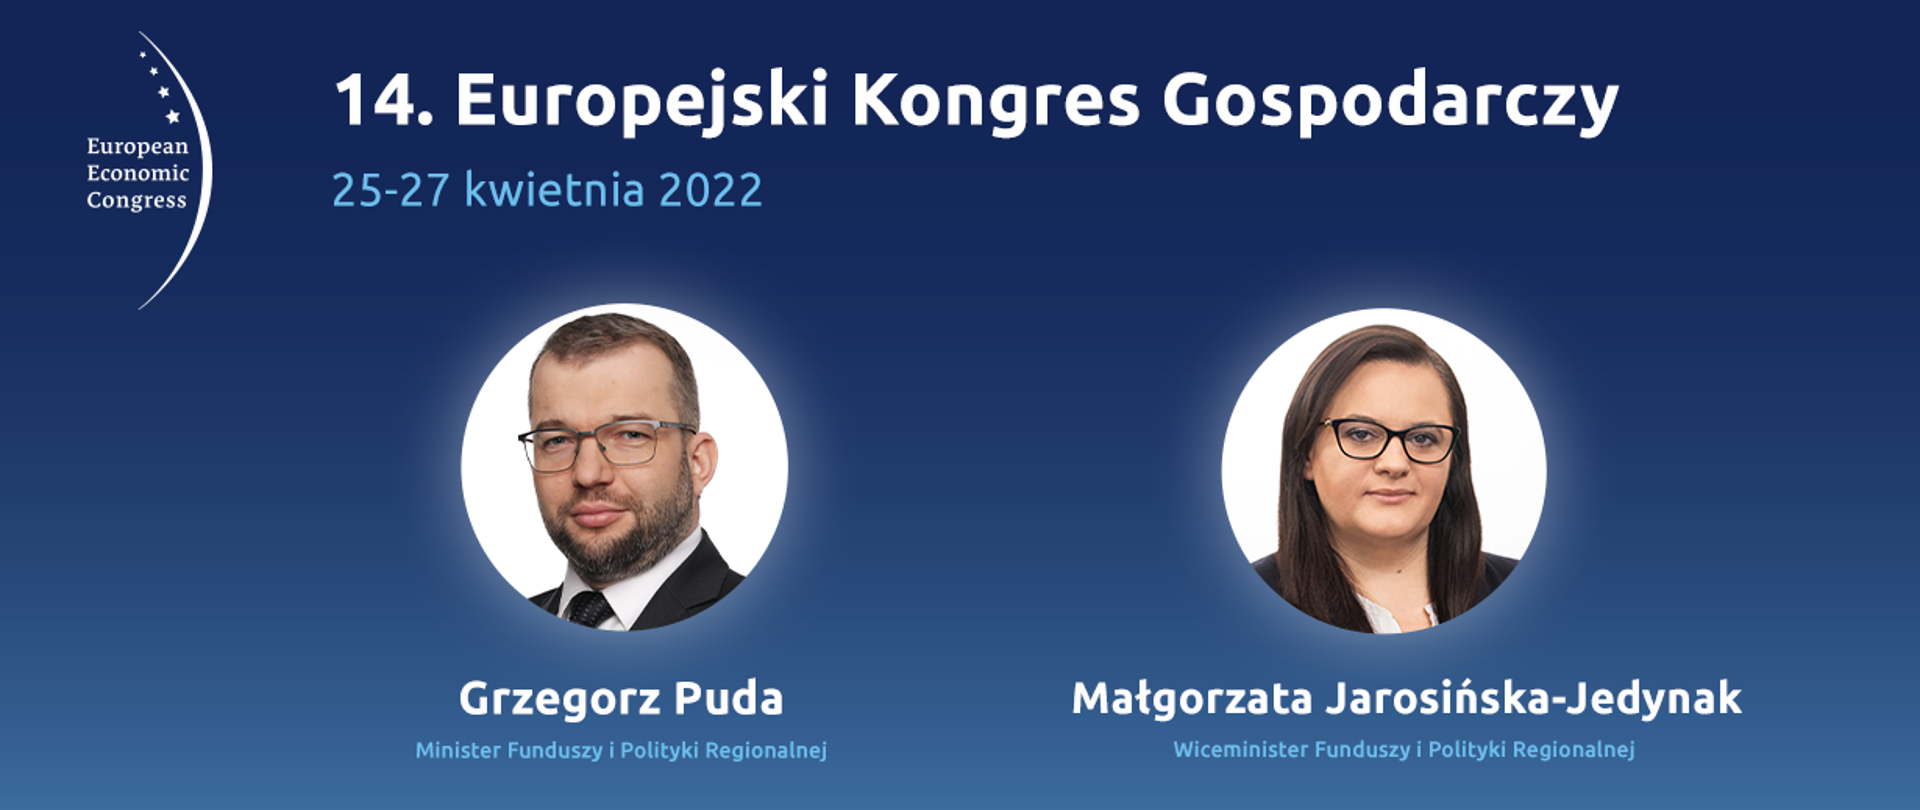 Na grafice napis: "14. Europejski Kongres Gospodarczy 25-26 kwietnia 2022", logotyp organizatora, twarze ministrów Grzegorza Pudy i Małgorzaty Jarosińskiej-Jedynak.